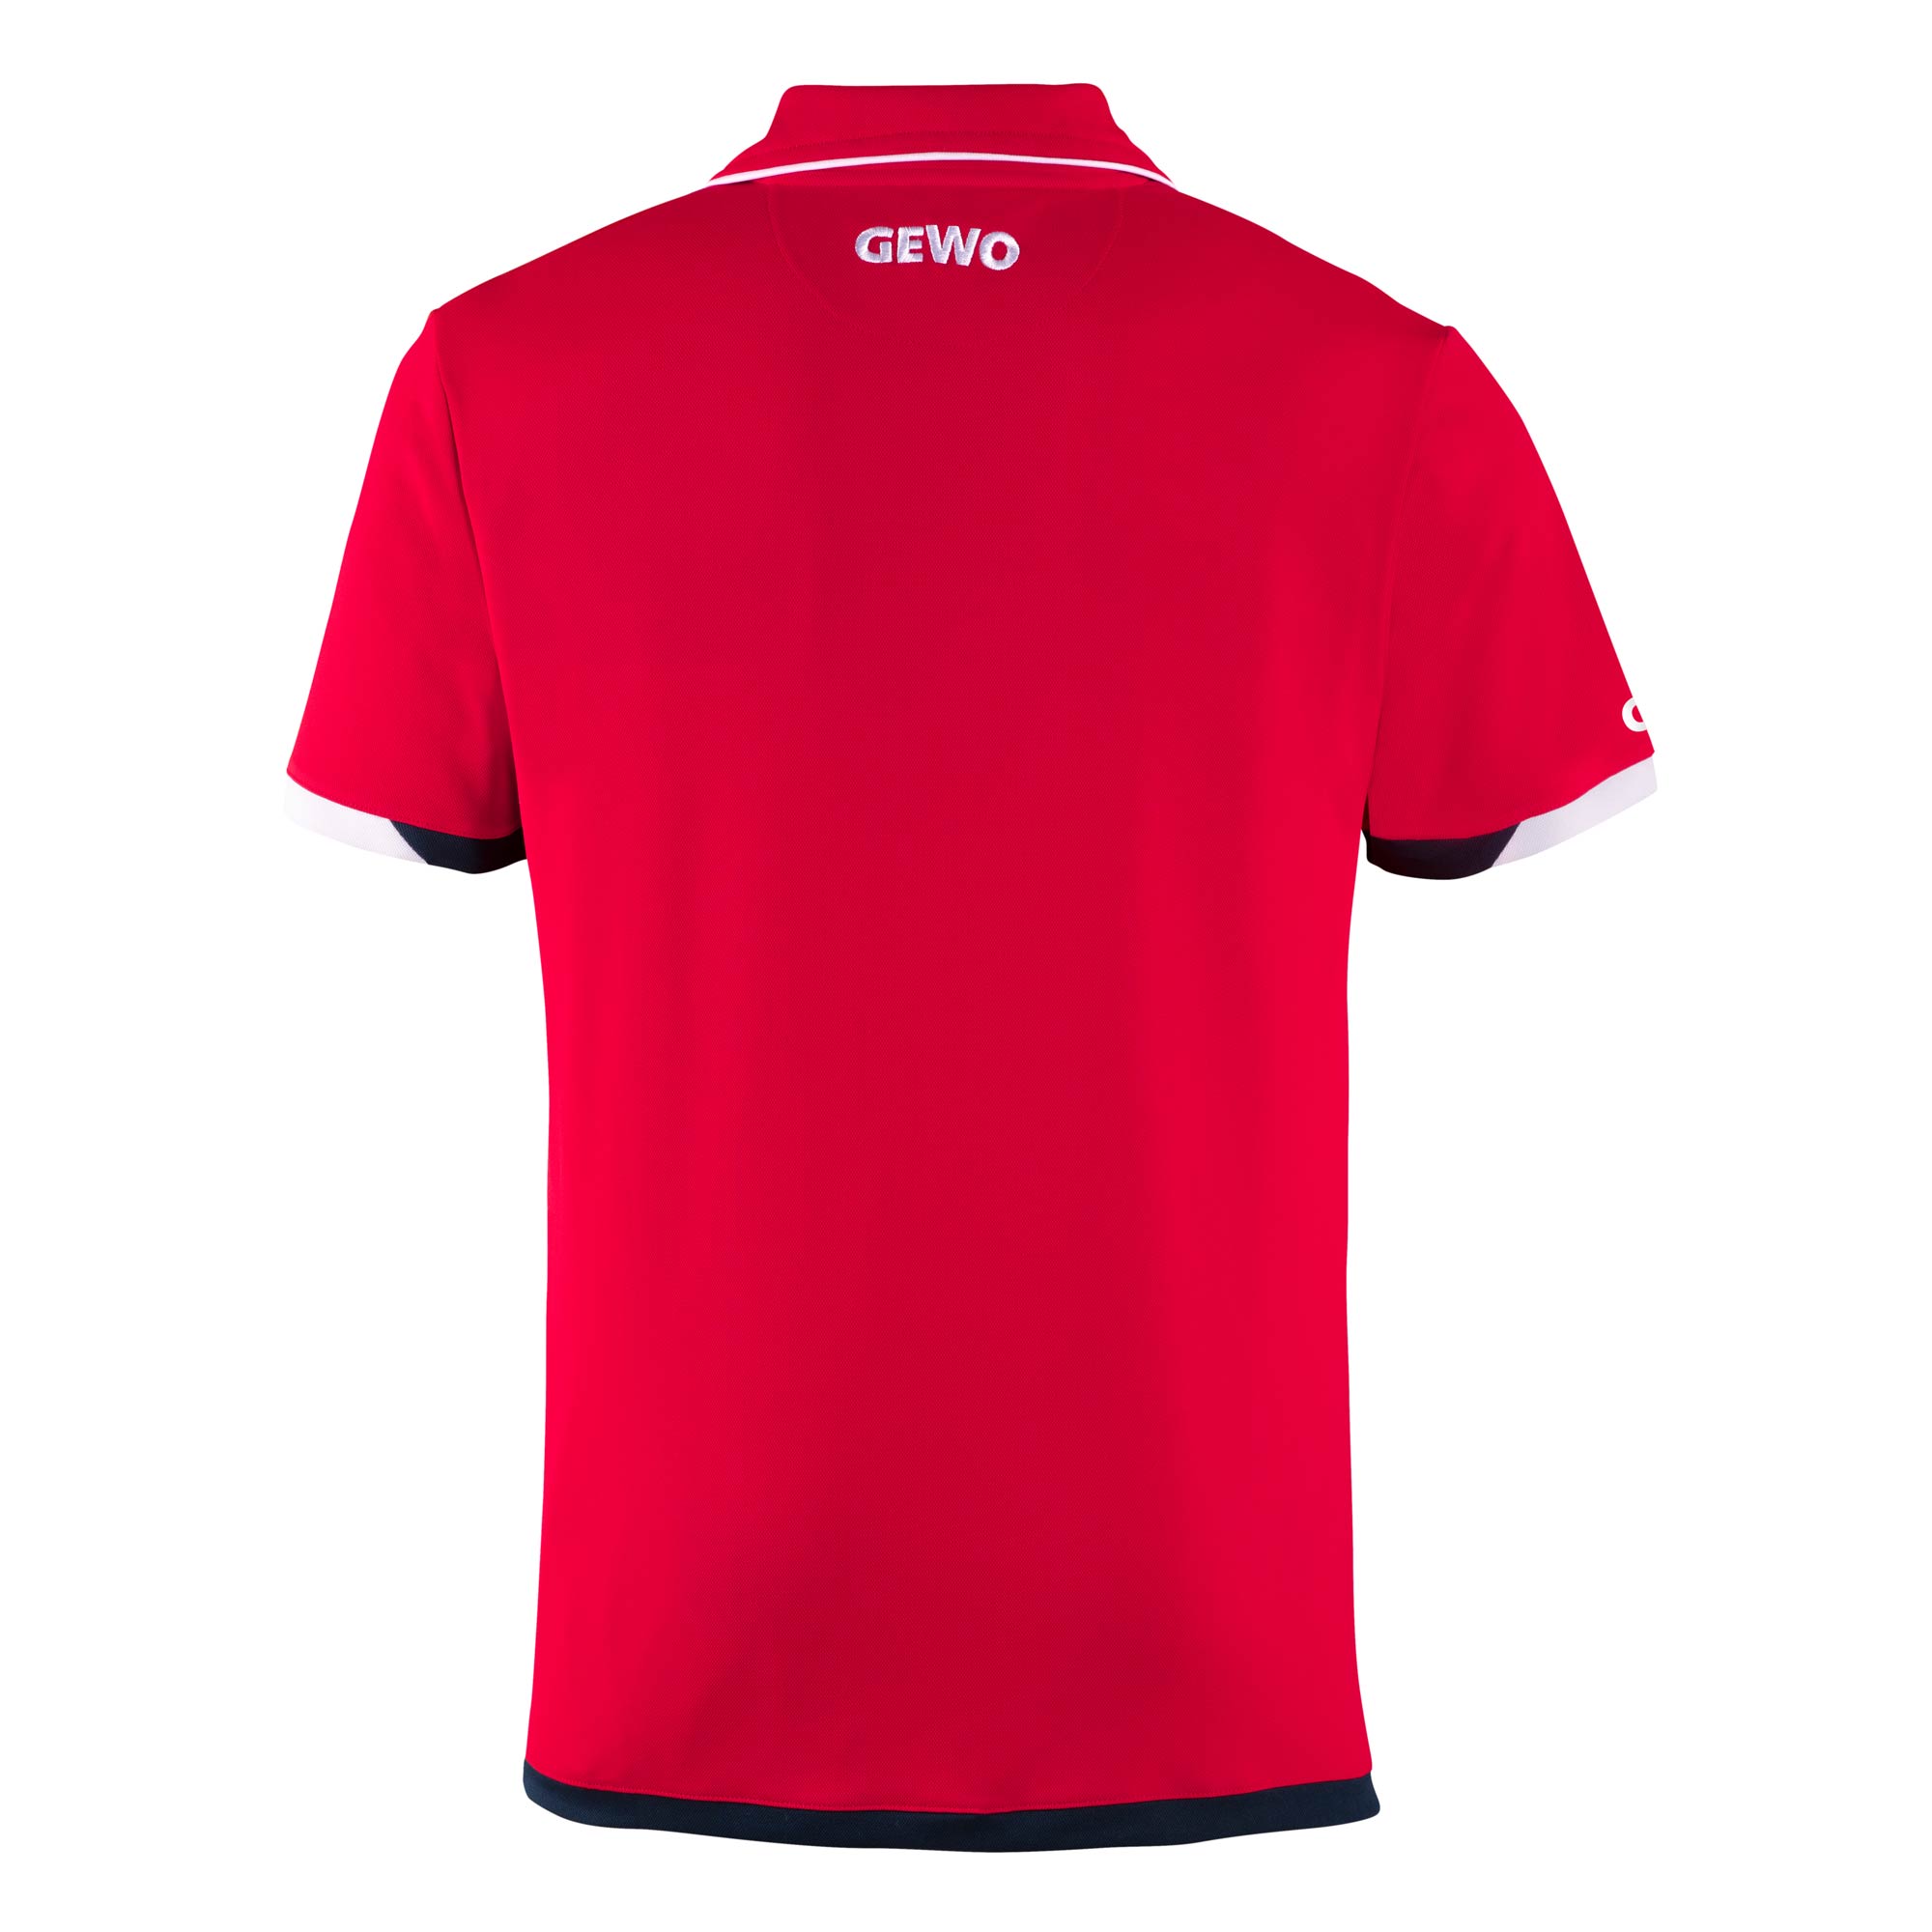 GEWO Shirt Murano Cotton red/navy XS